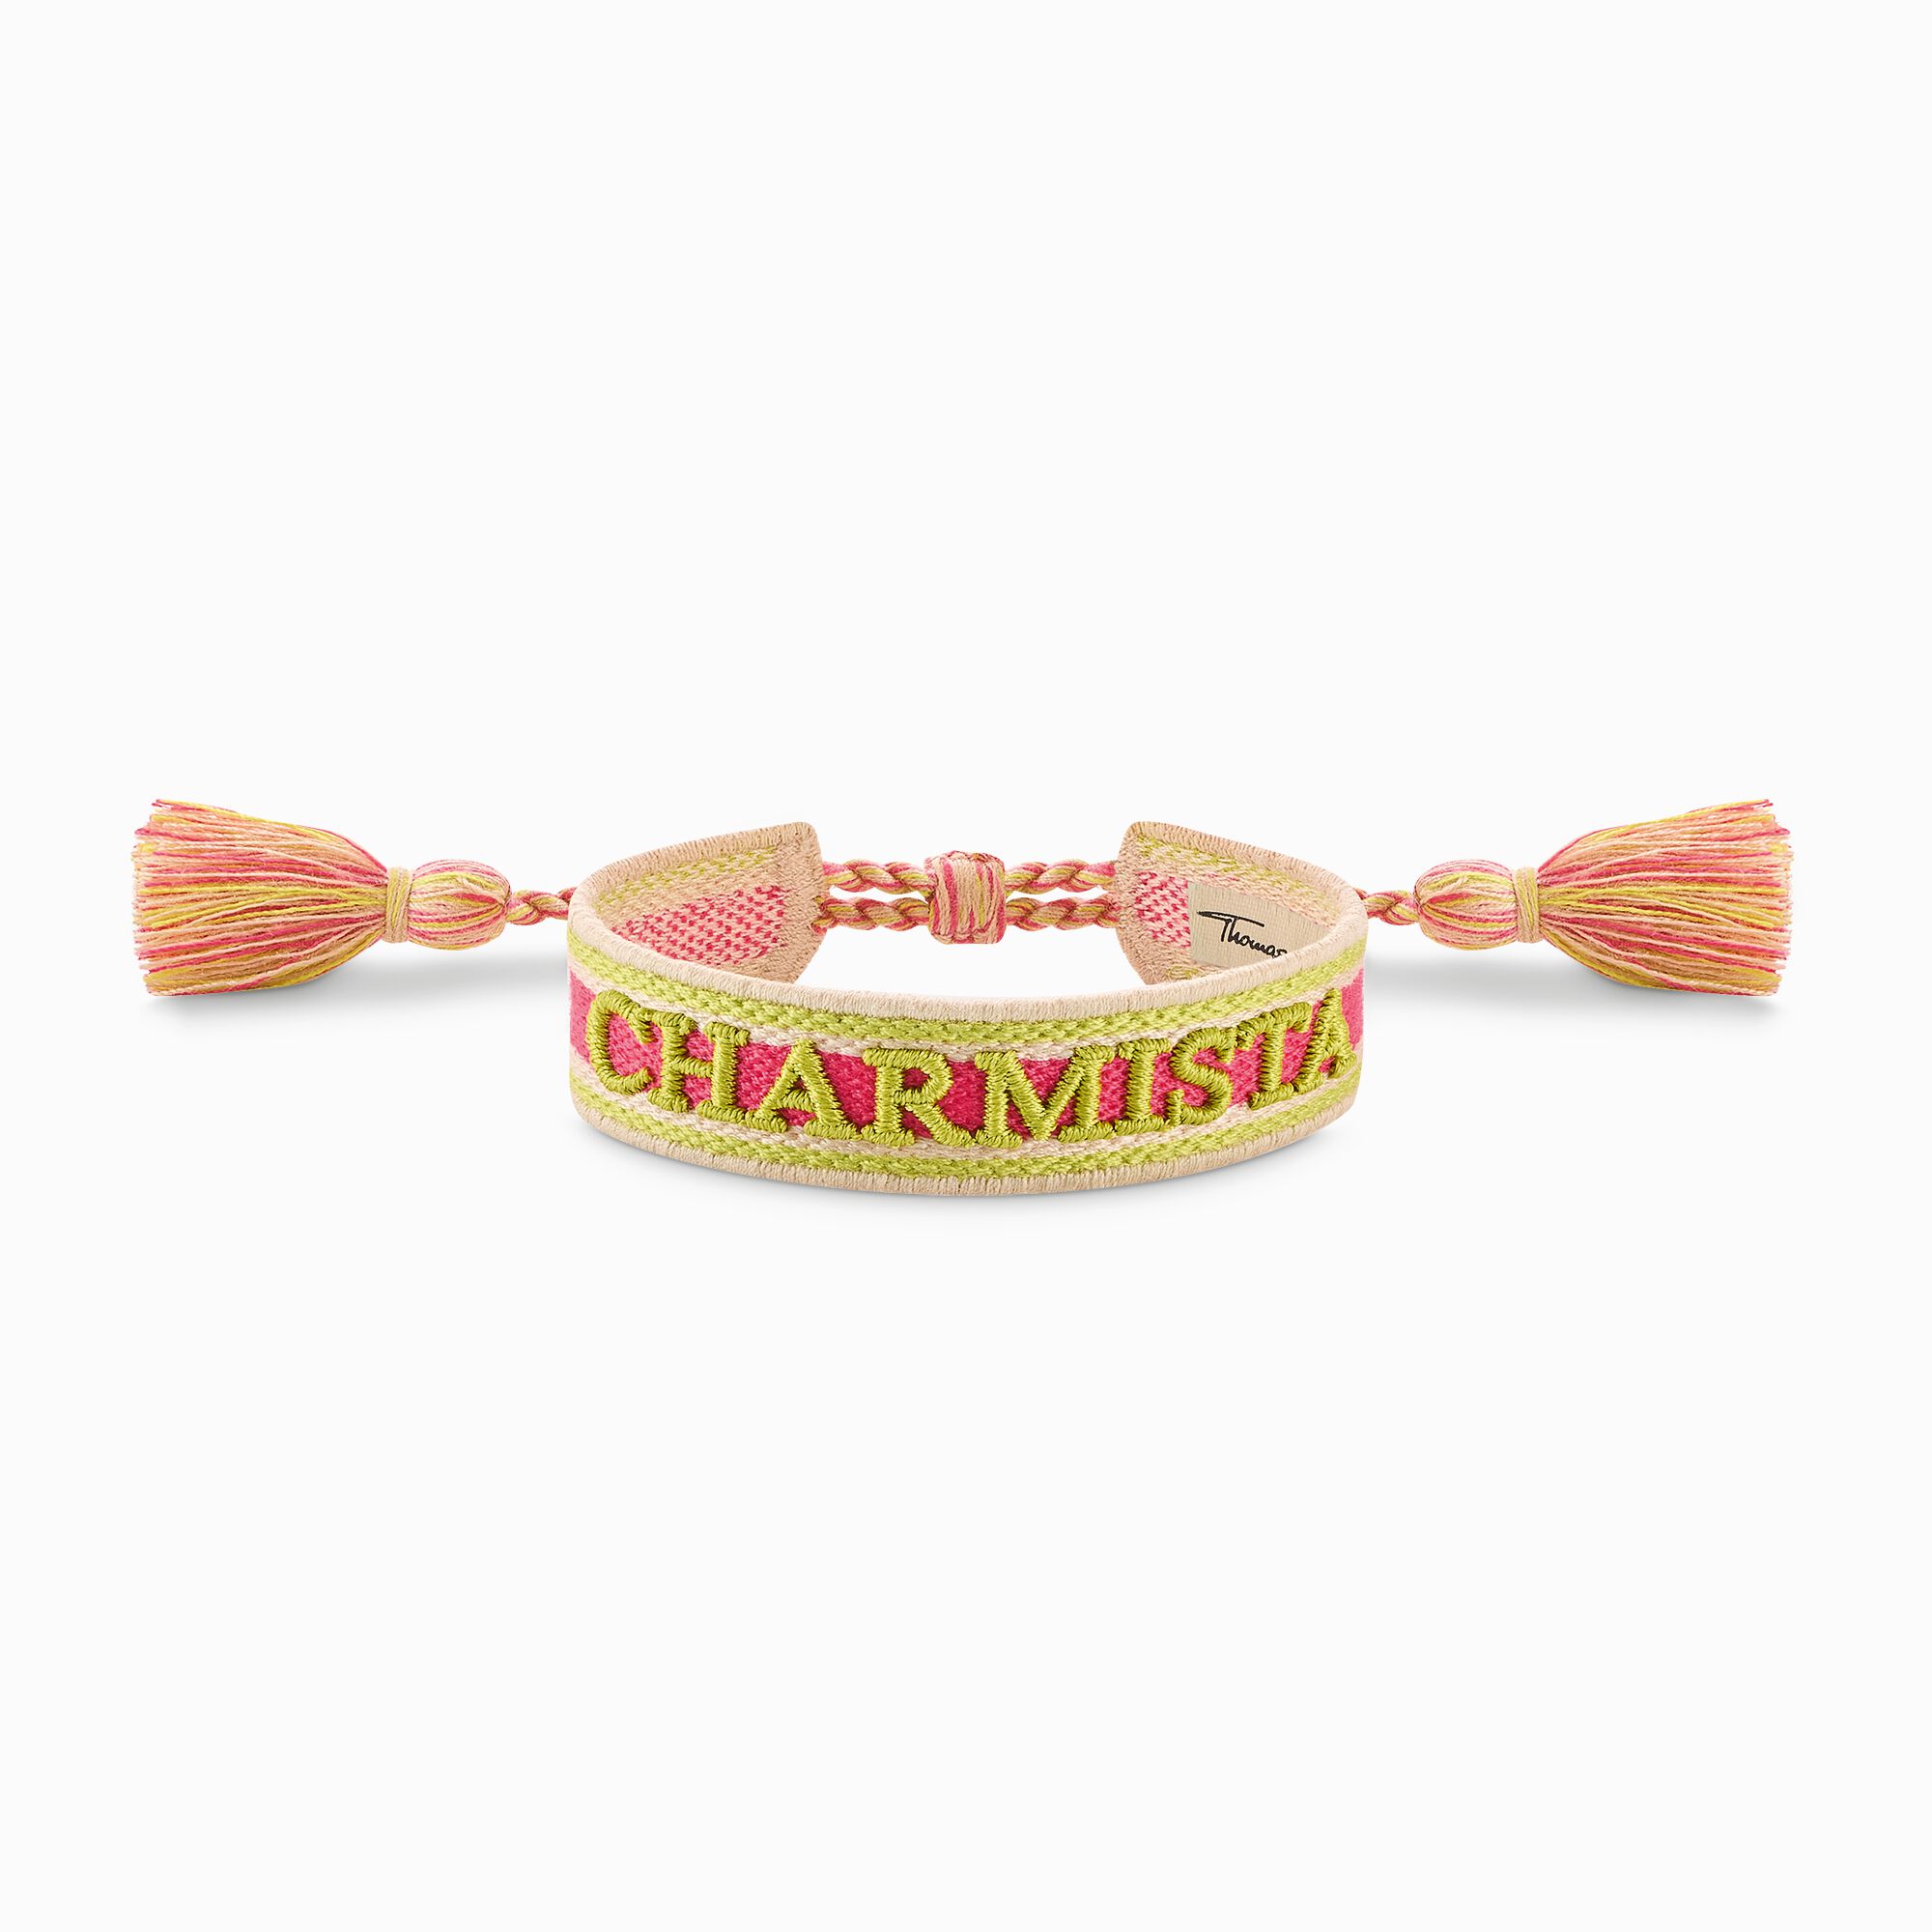 Gewebtes Armband Charmista in Pink, Gr&uuml;n und Orange aus der Charming Collection Kollektion im Online Shop von THOMAS SABO